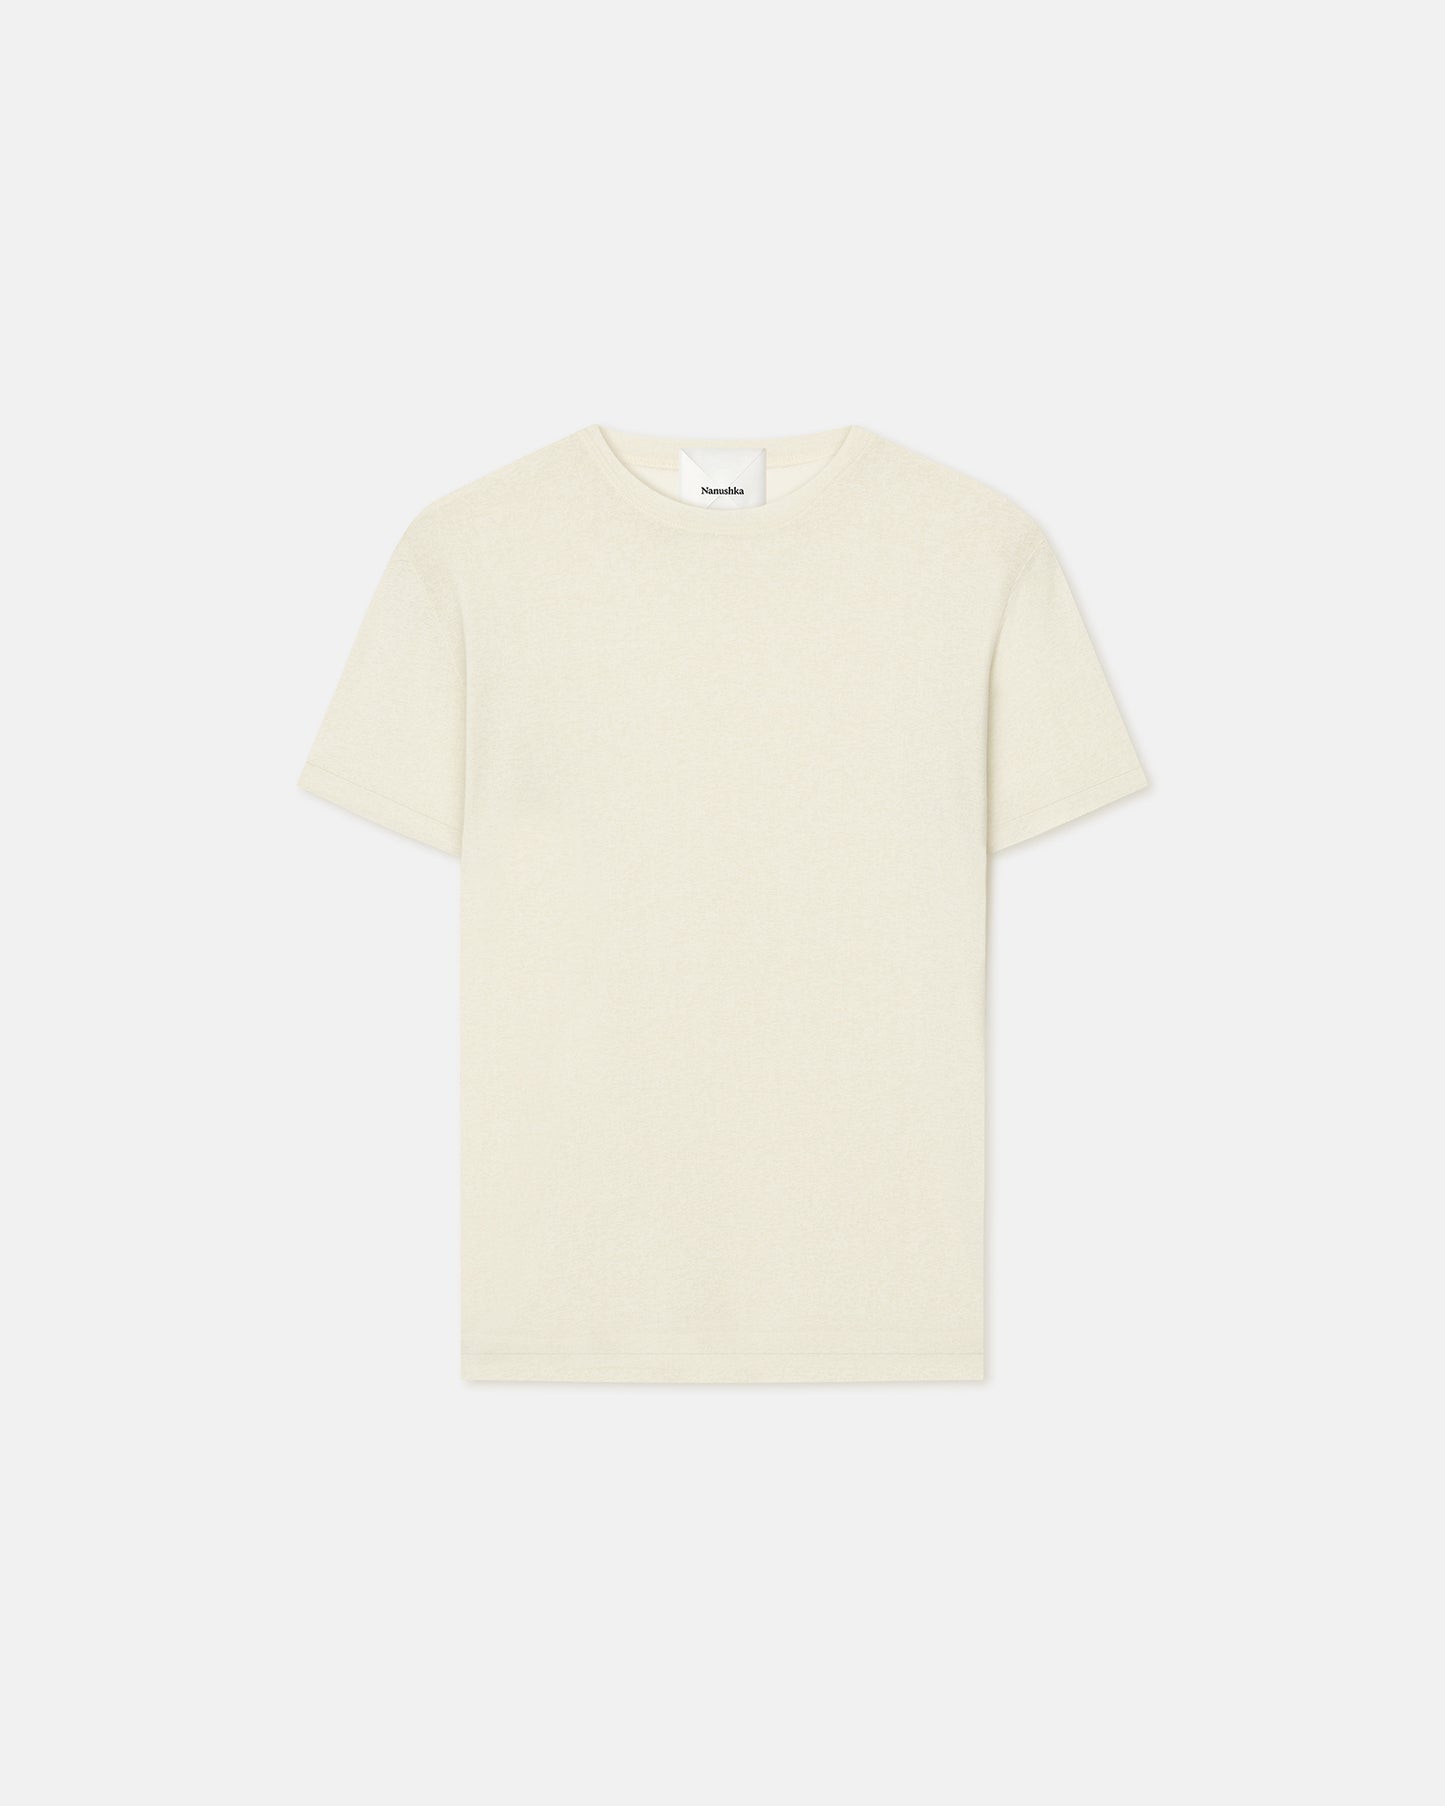 Jenno - Mesh-Jersey T-Shirt - White Wax